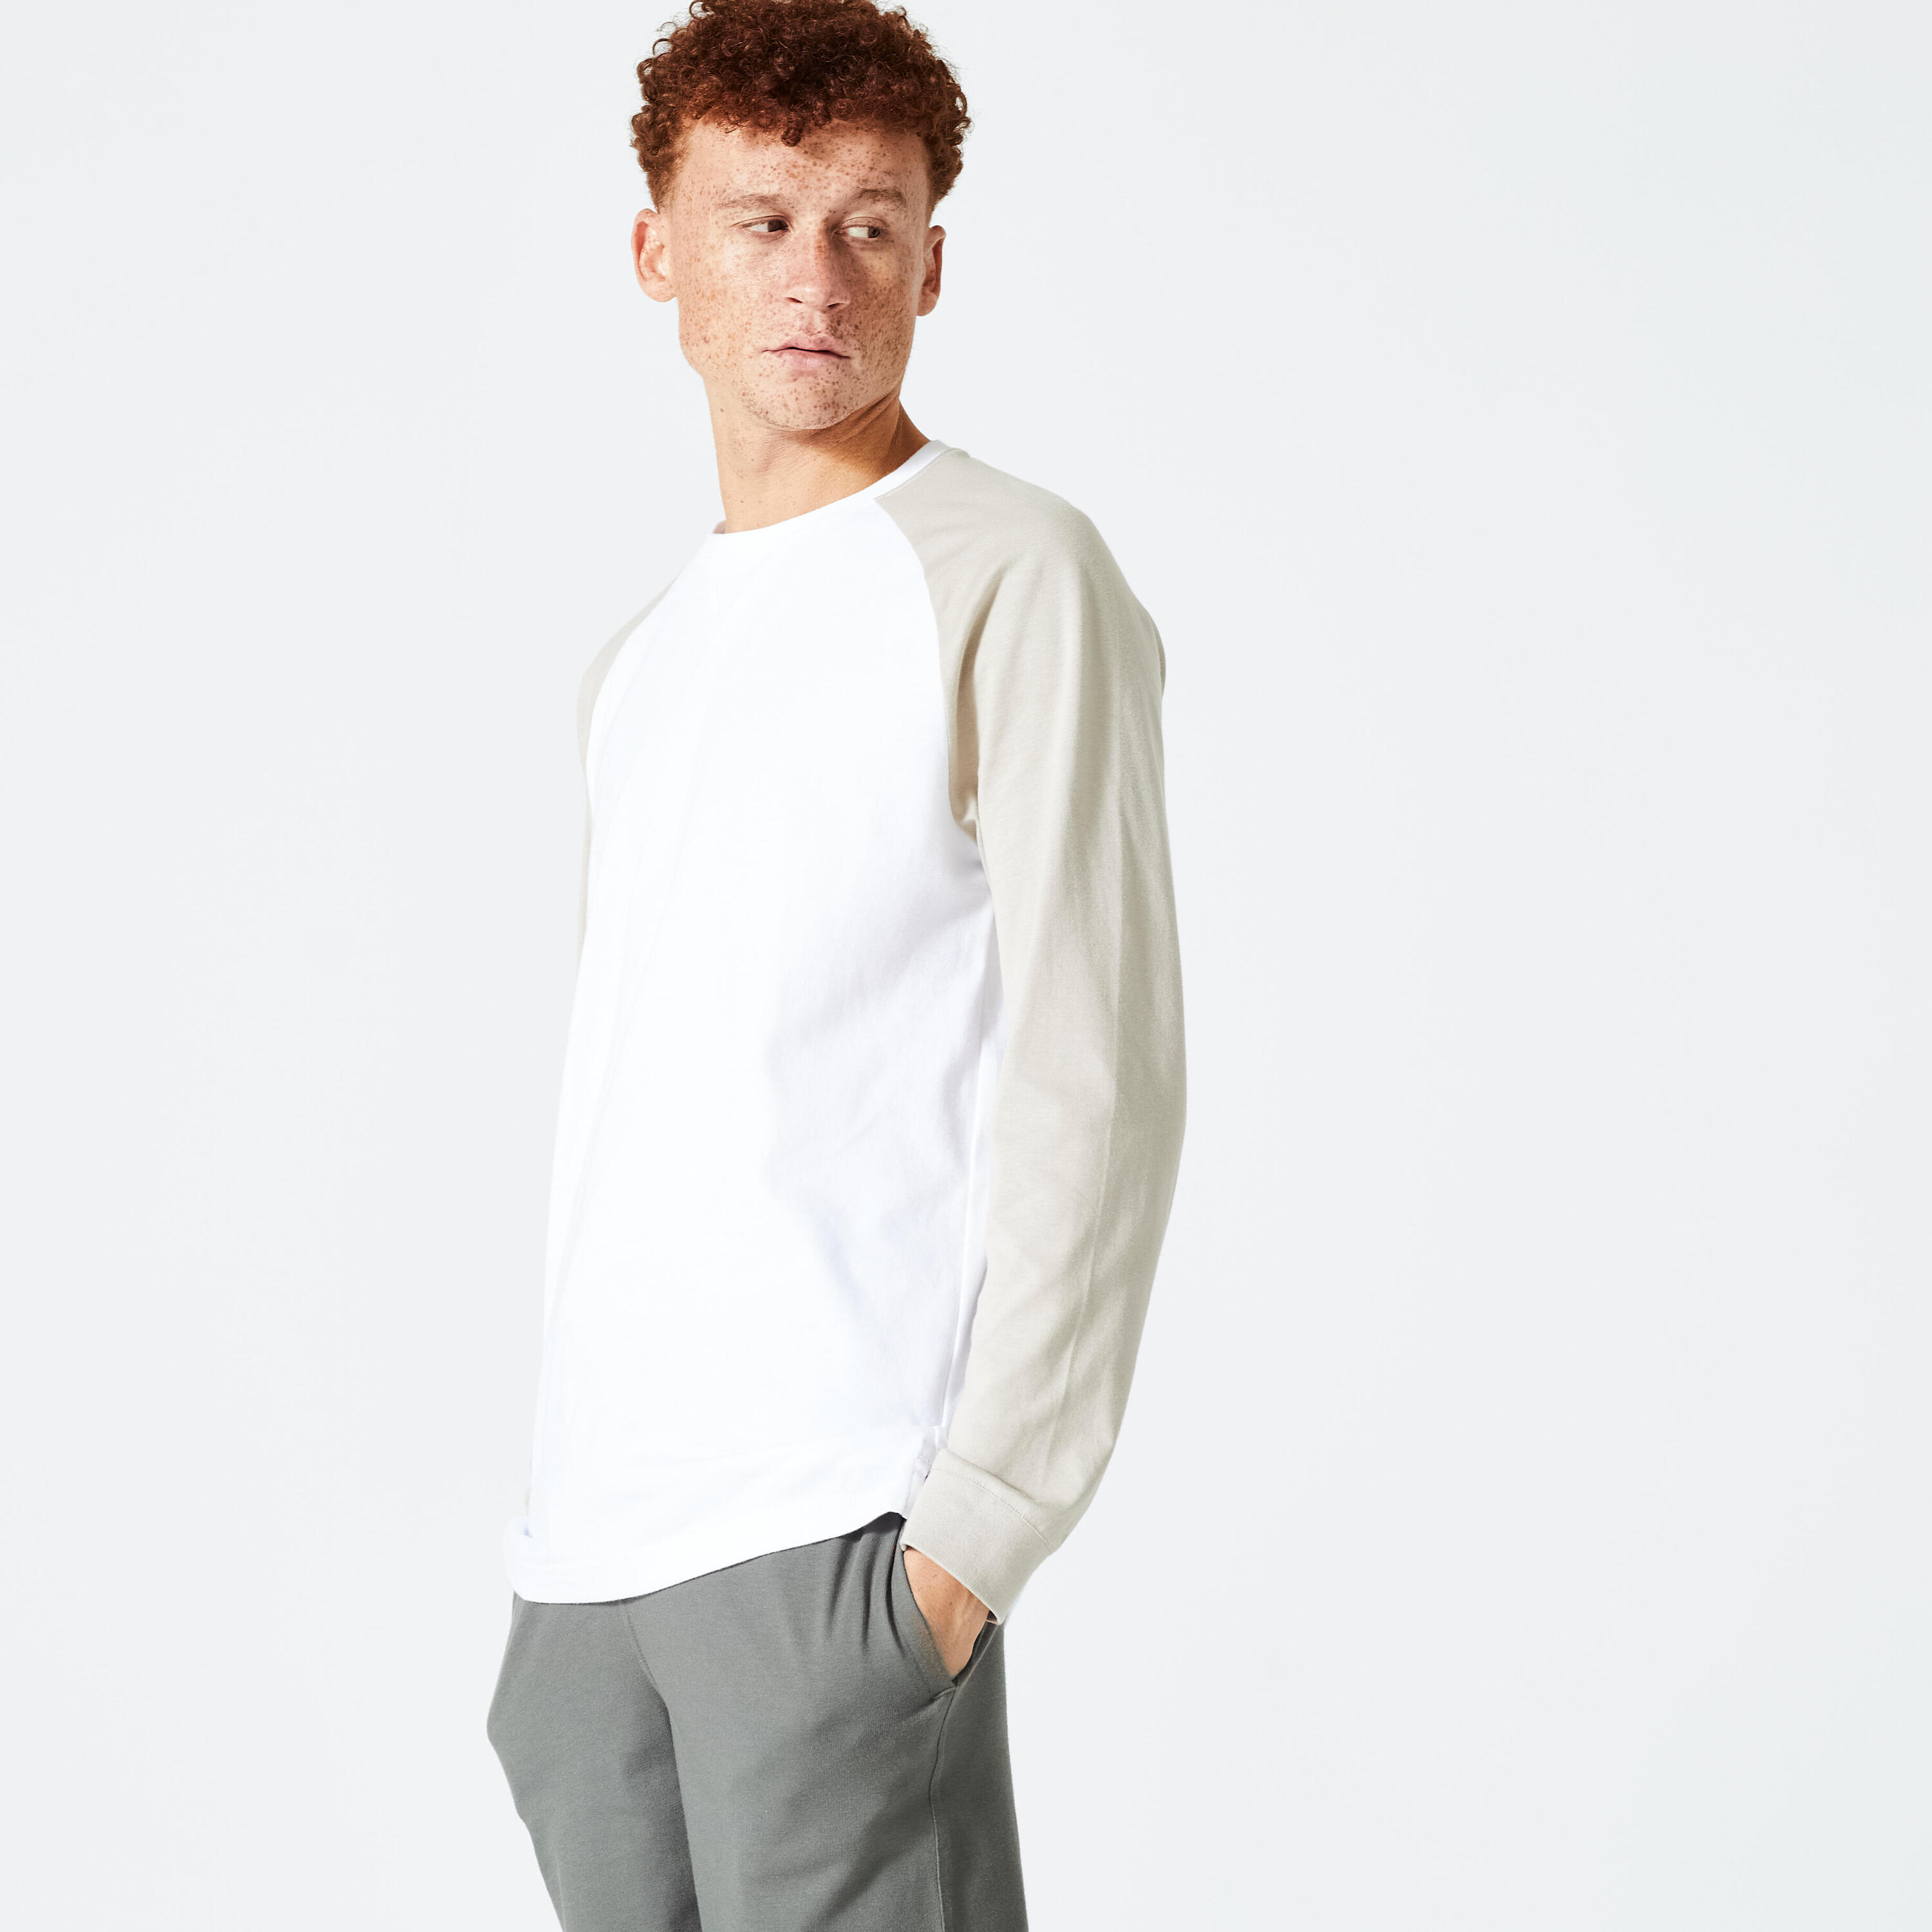 DOMYOS Men's Long-Sleeved Fitness T-Shirt 520 - White/Beige